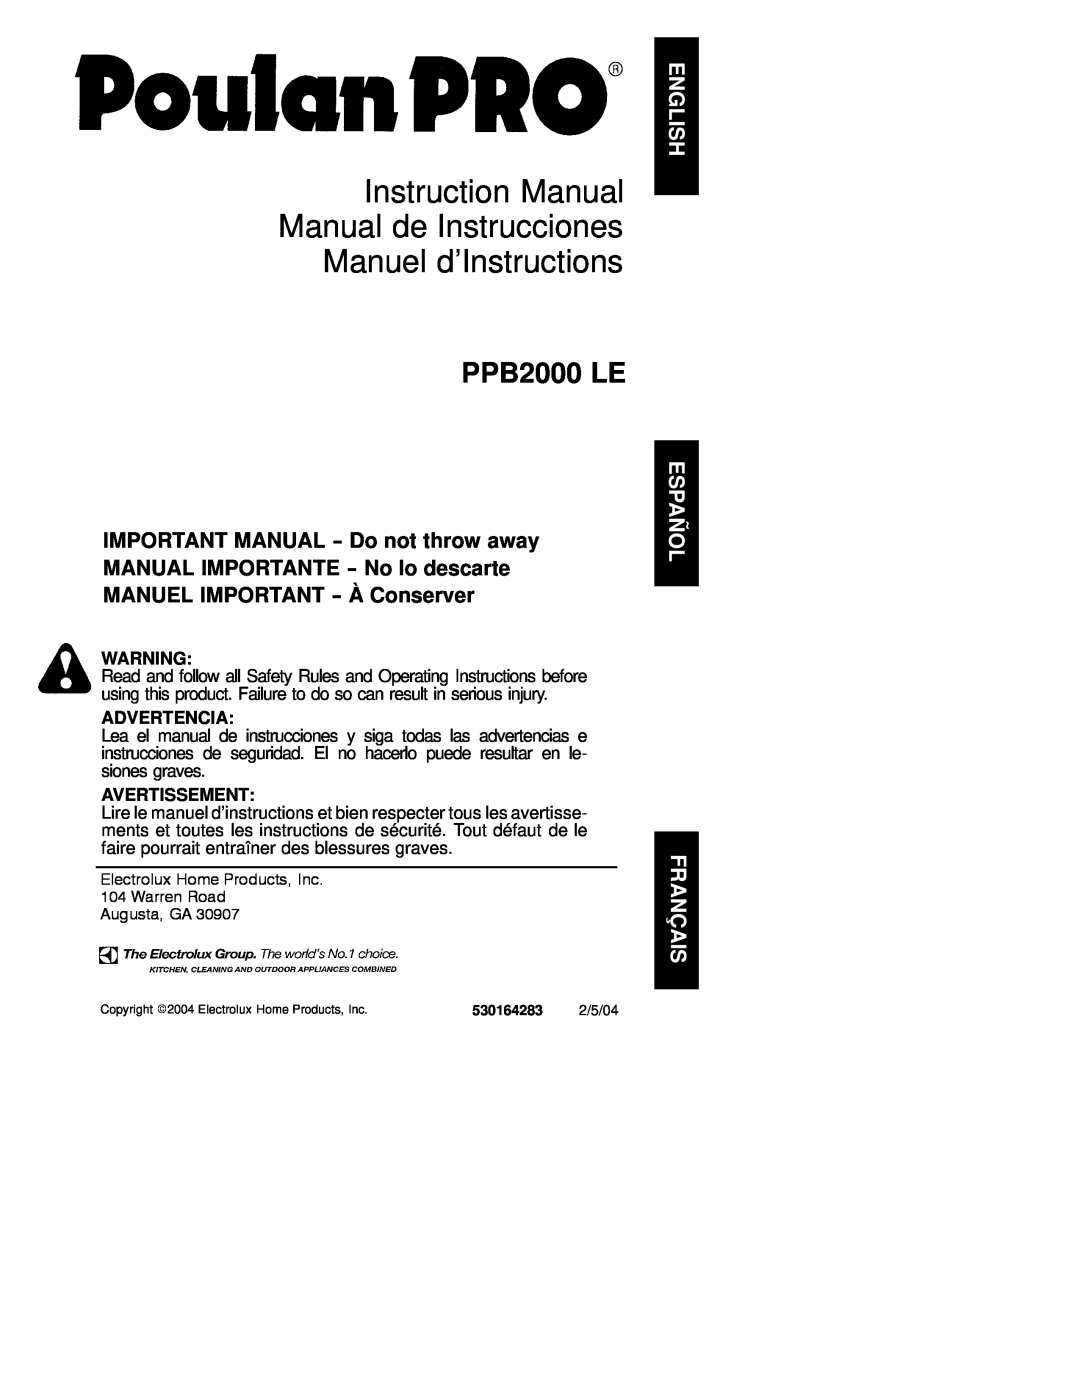 Poulan PPB200 LE instruction manual PPB2000 LE, Advertencia, Avertissement 